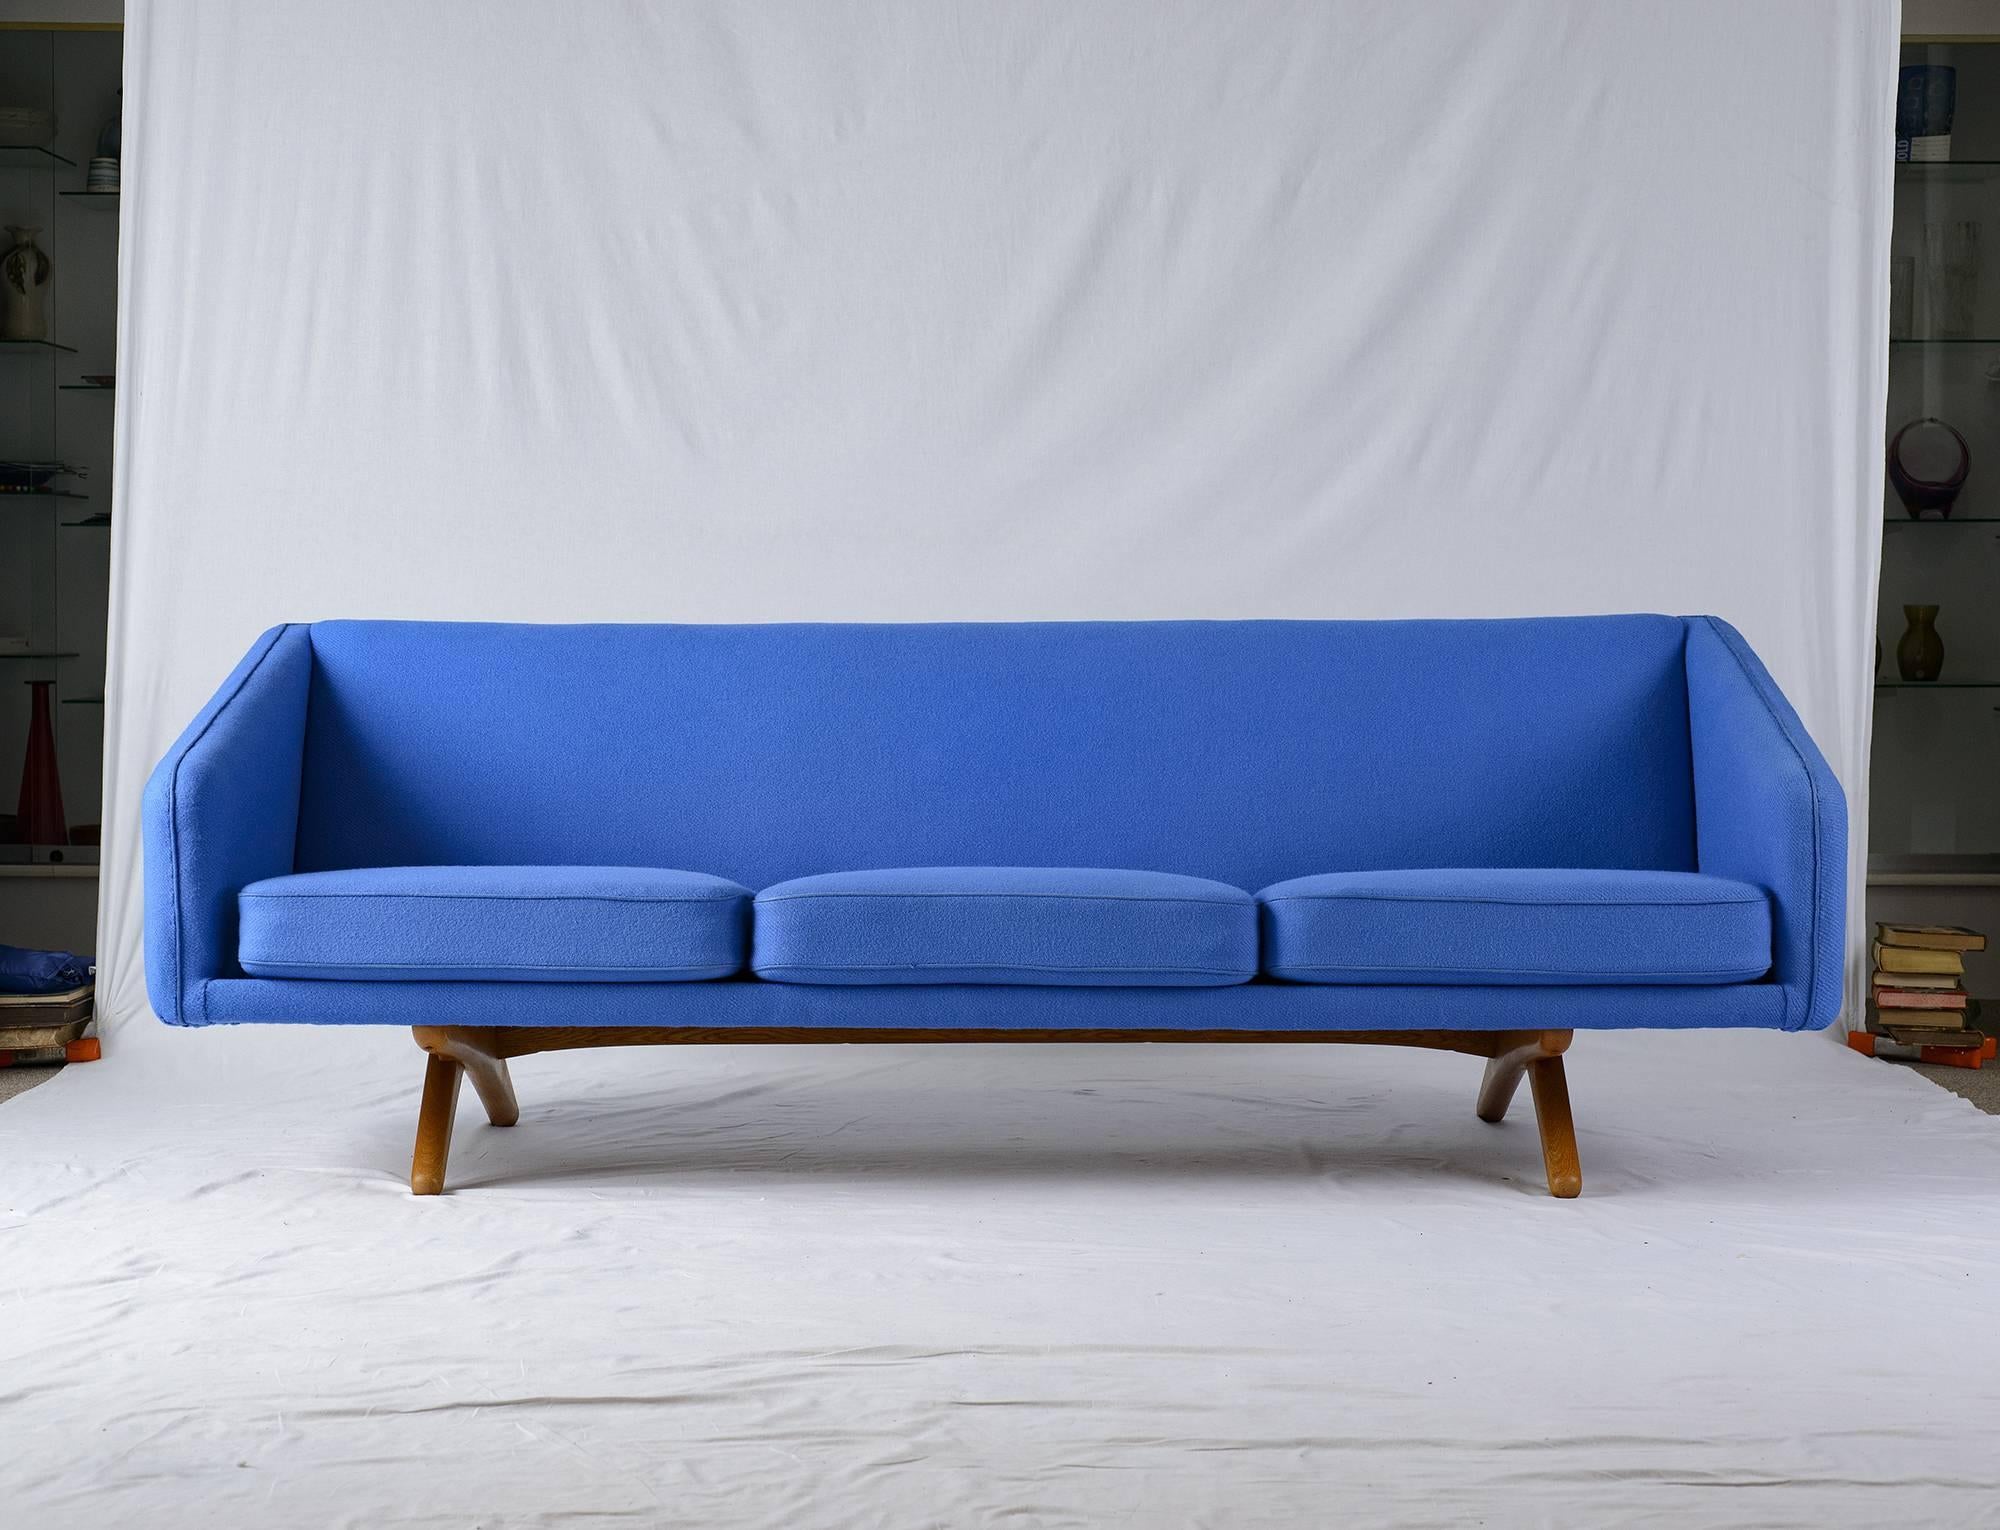 Illum Wikkelsø ML-90 sofa produced by A. Mikael Laursen.